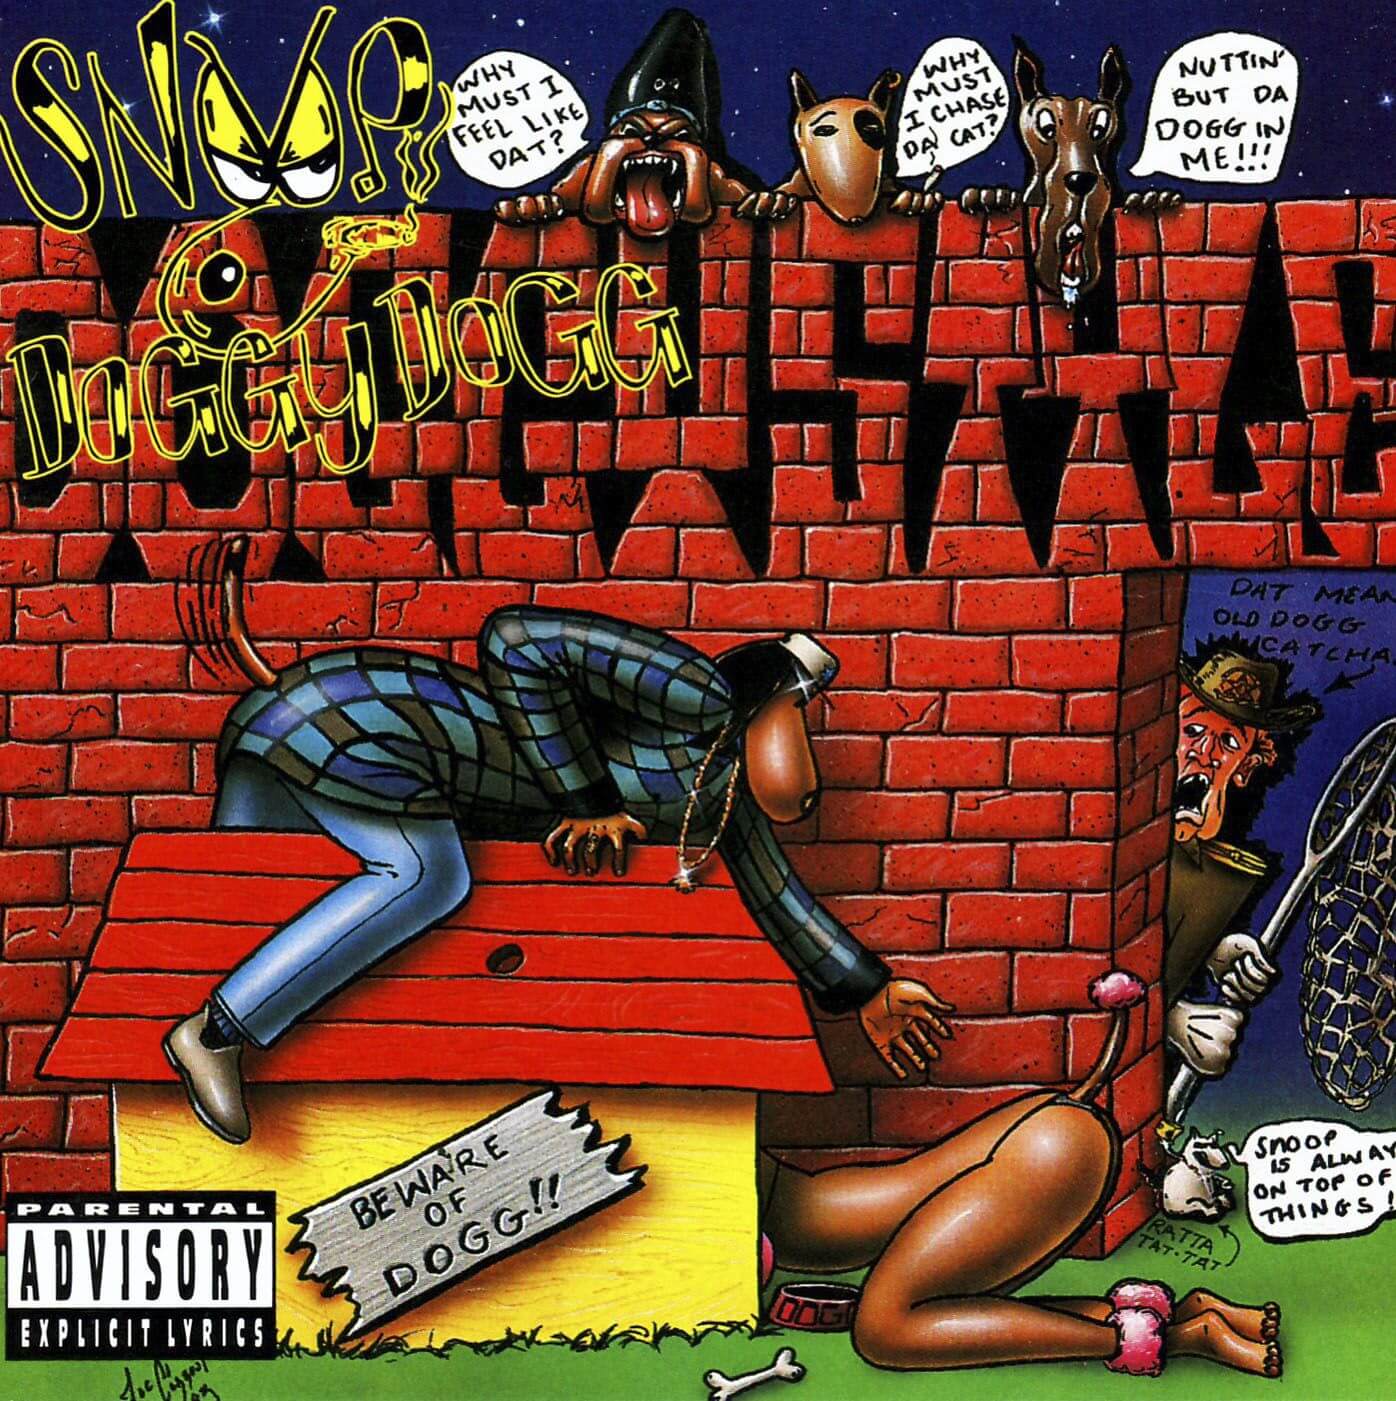 Snoop Doggy Dogg “Doggy Style” (1993)